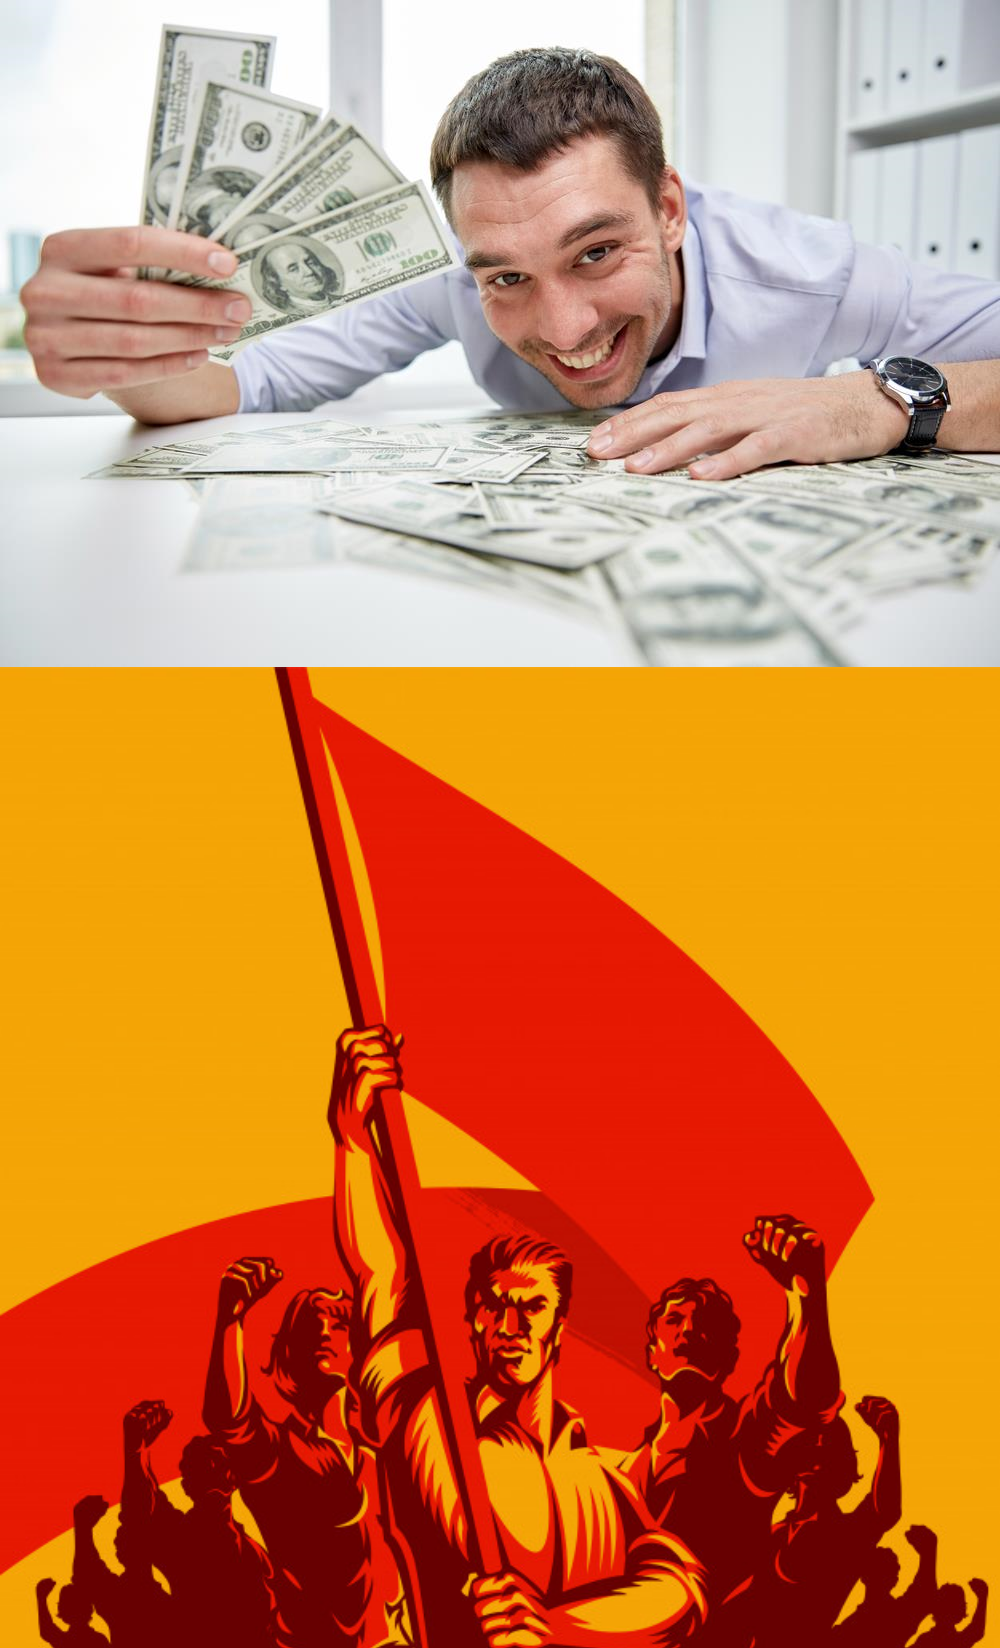 Communist money Blank Meme Template